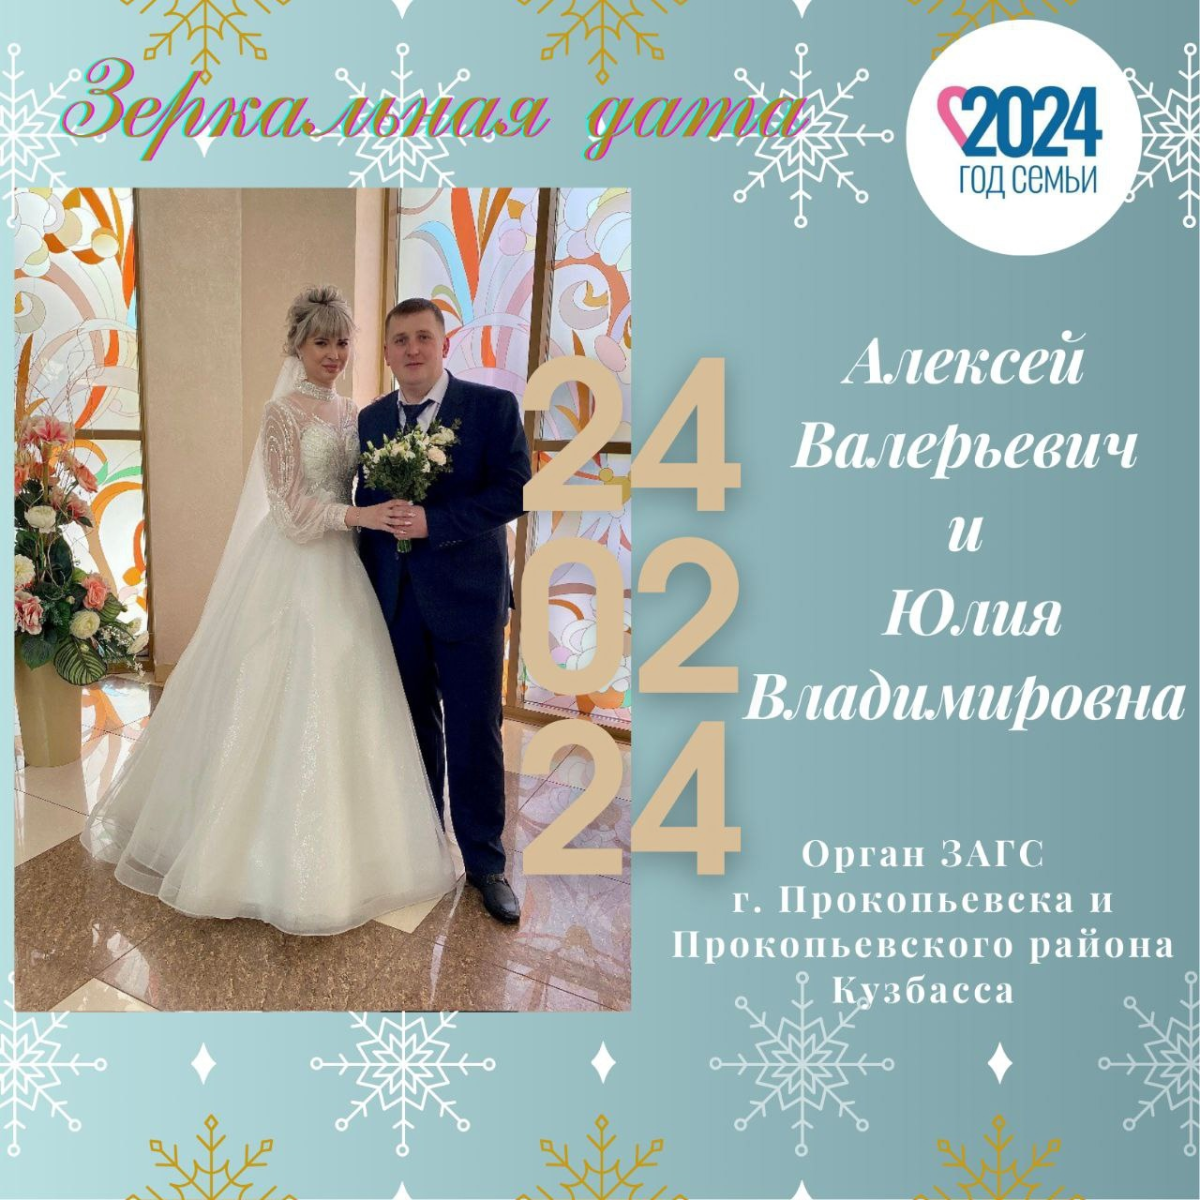 Счастье в цифрах? Сколько прокопьевских пар выбрали дату 24.02.24 для свадебного торжества